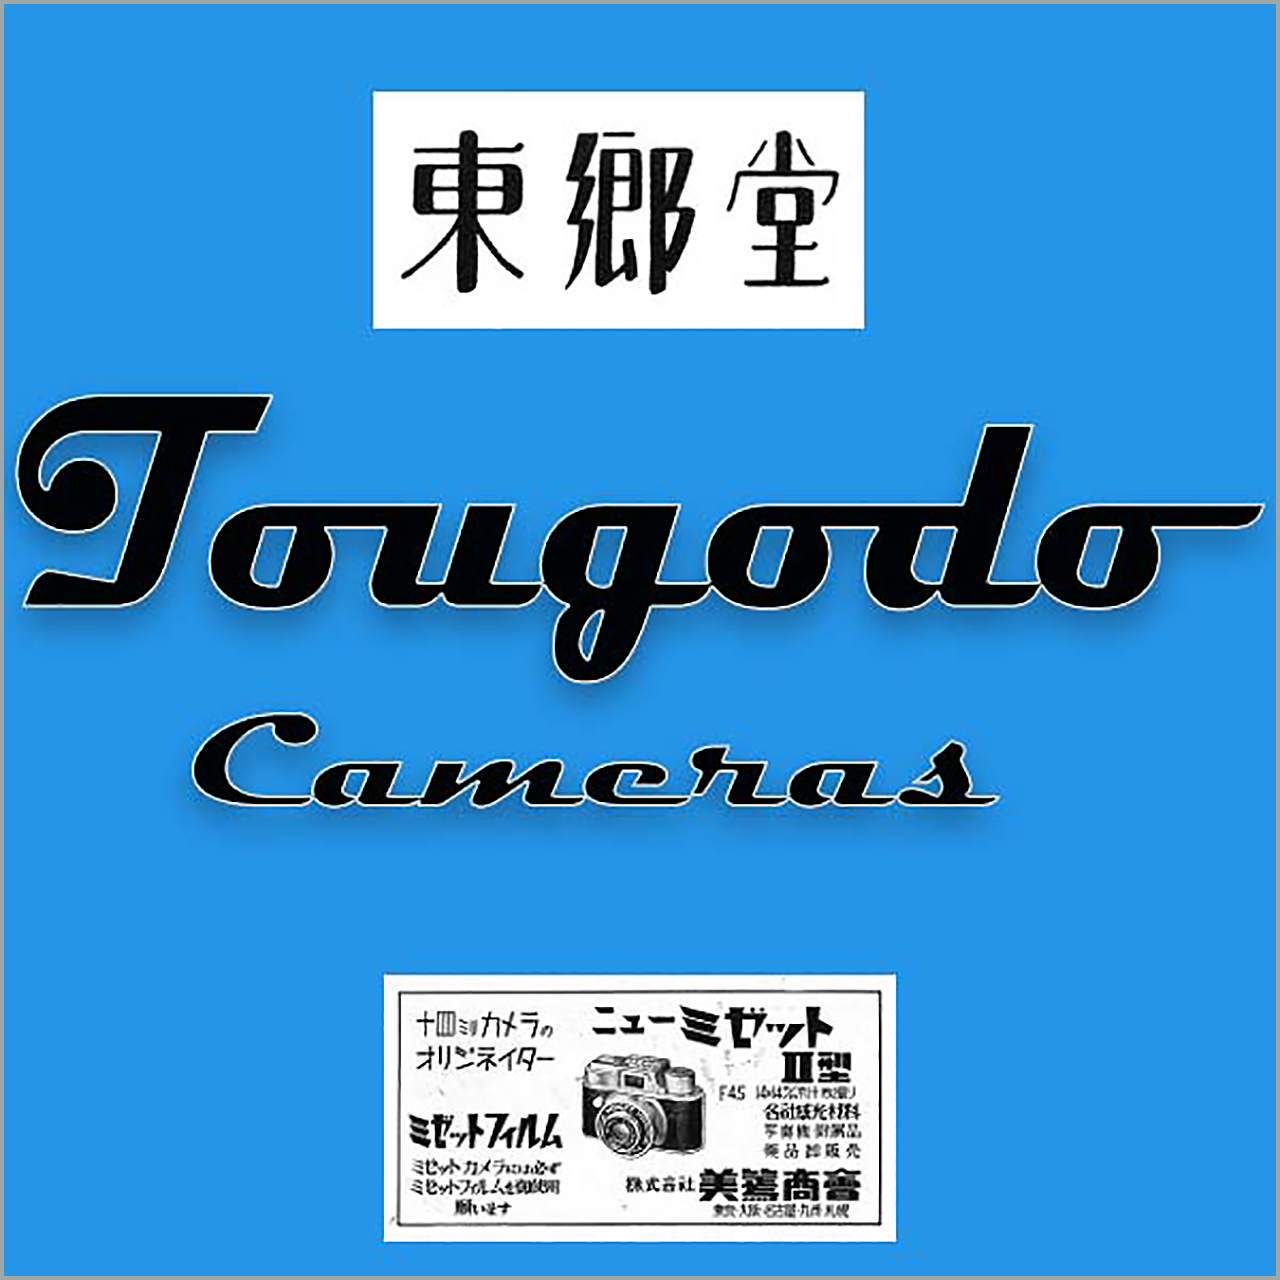 1280x1280px-SEQ_Tougodo-vWA24